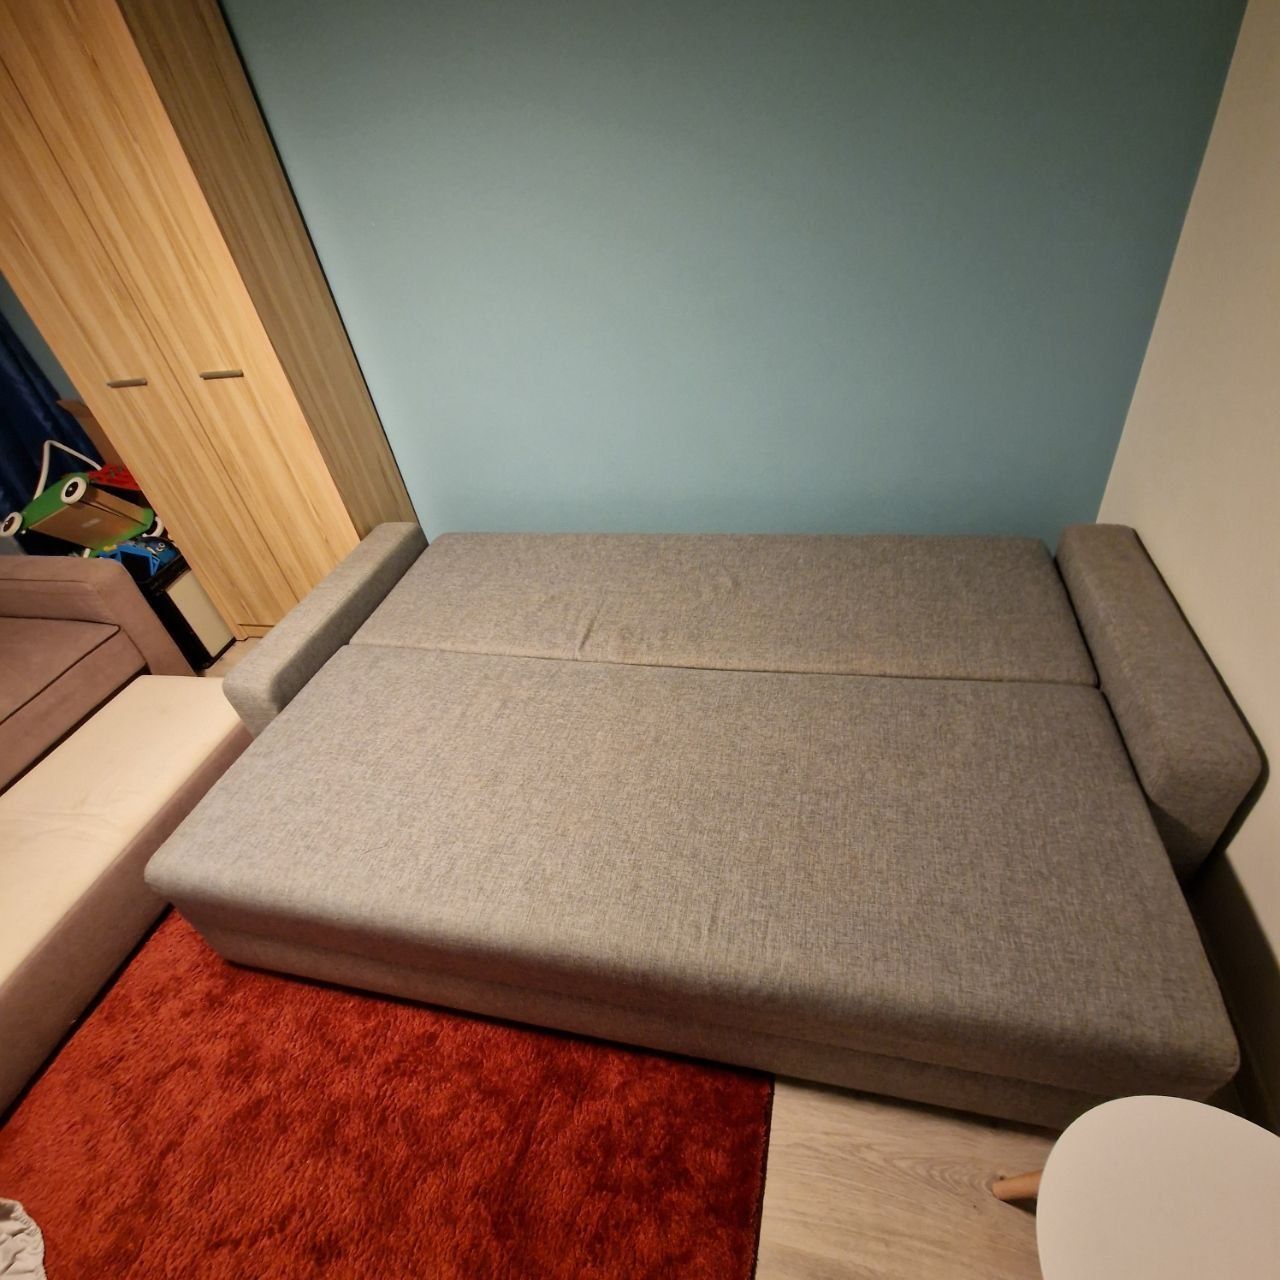 Sofa rozkładana kanapa Gralviken Ikea